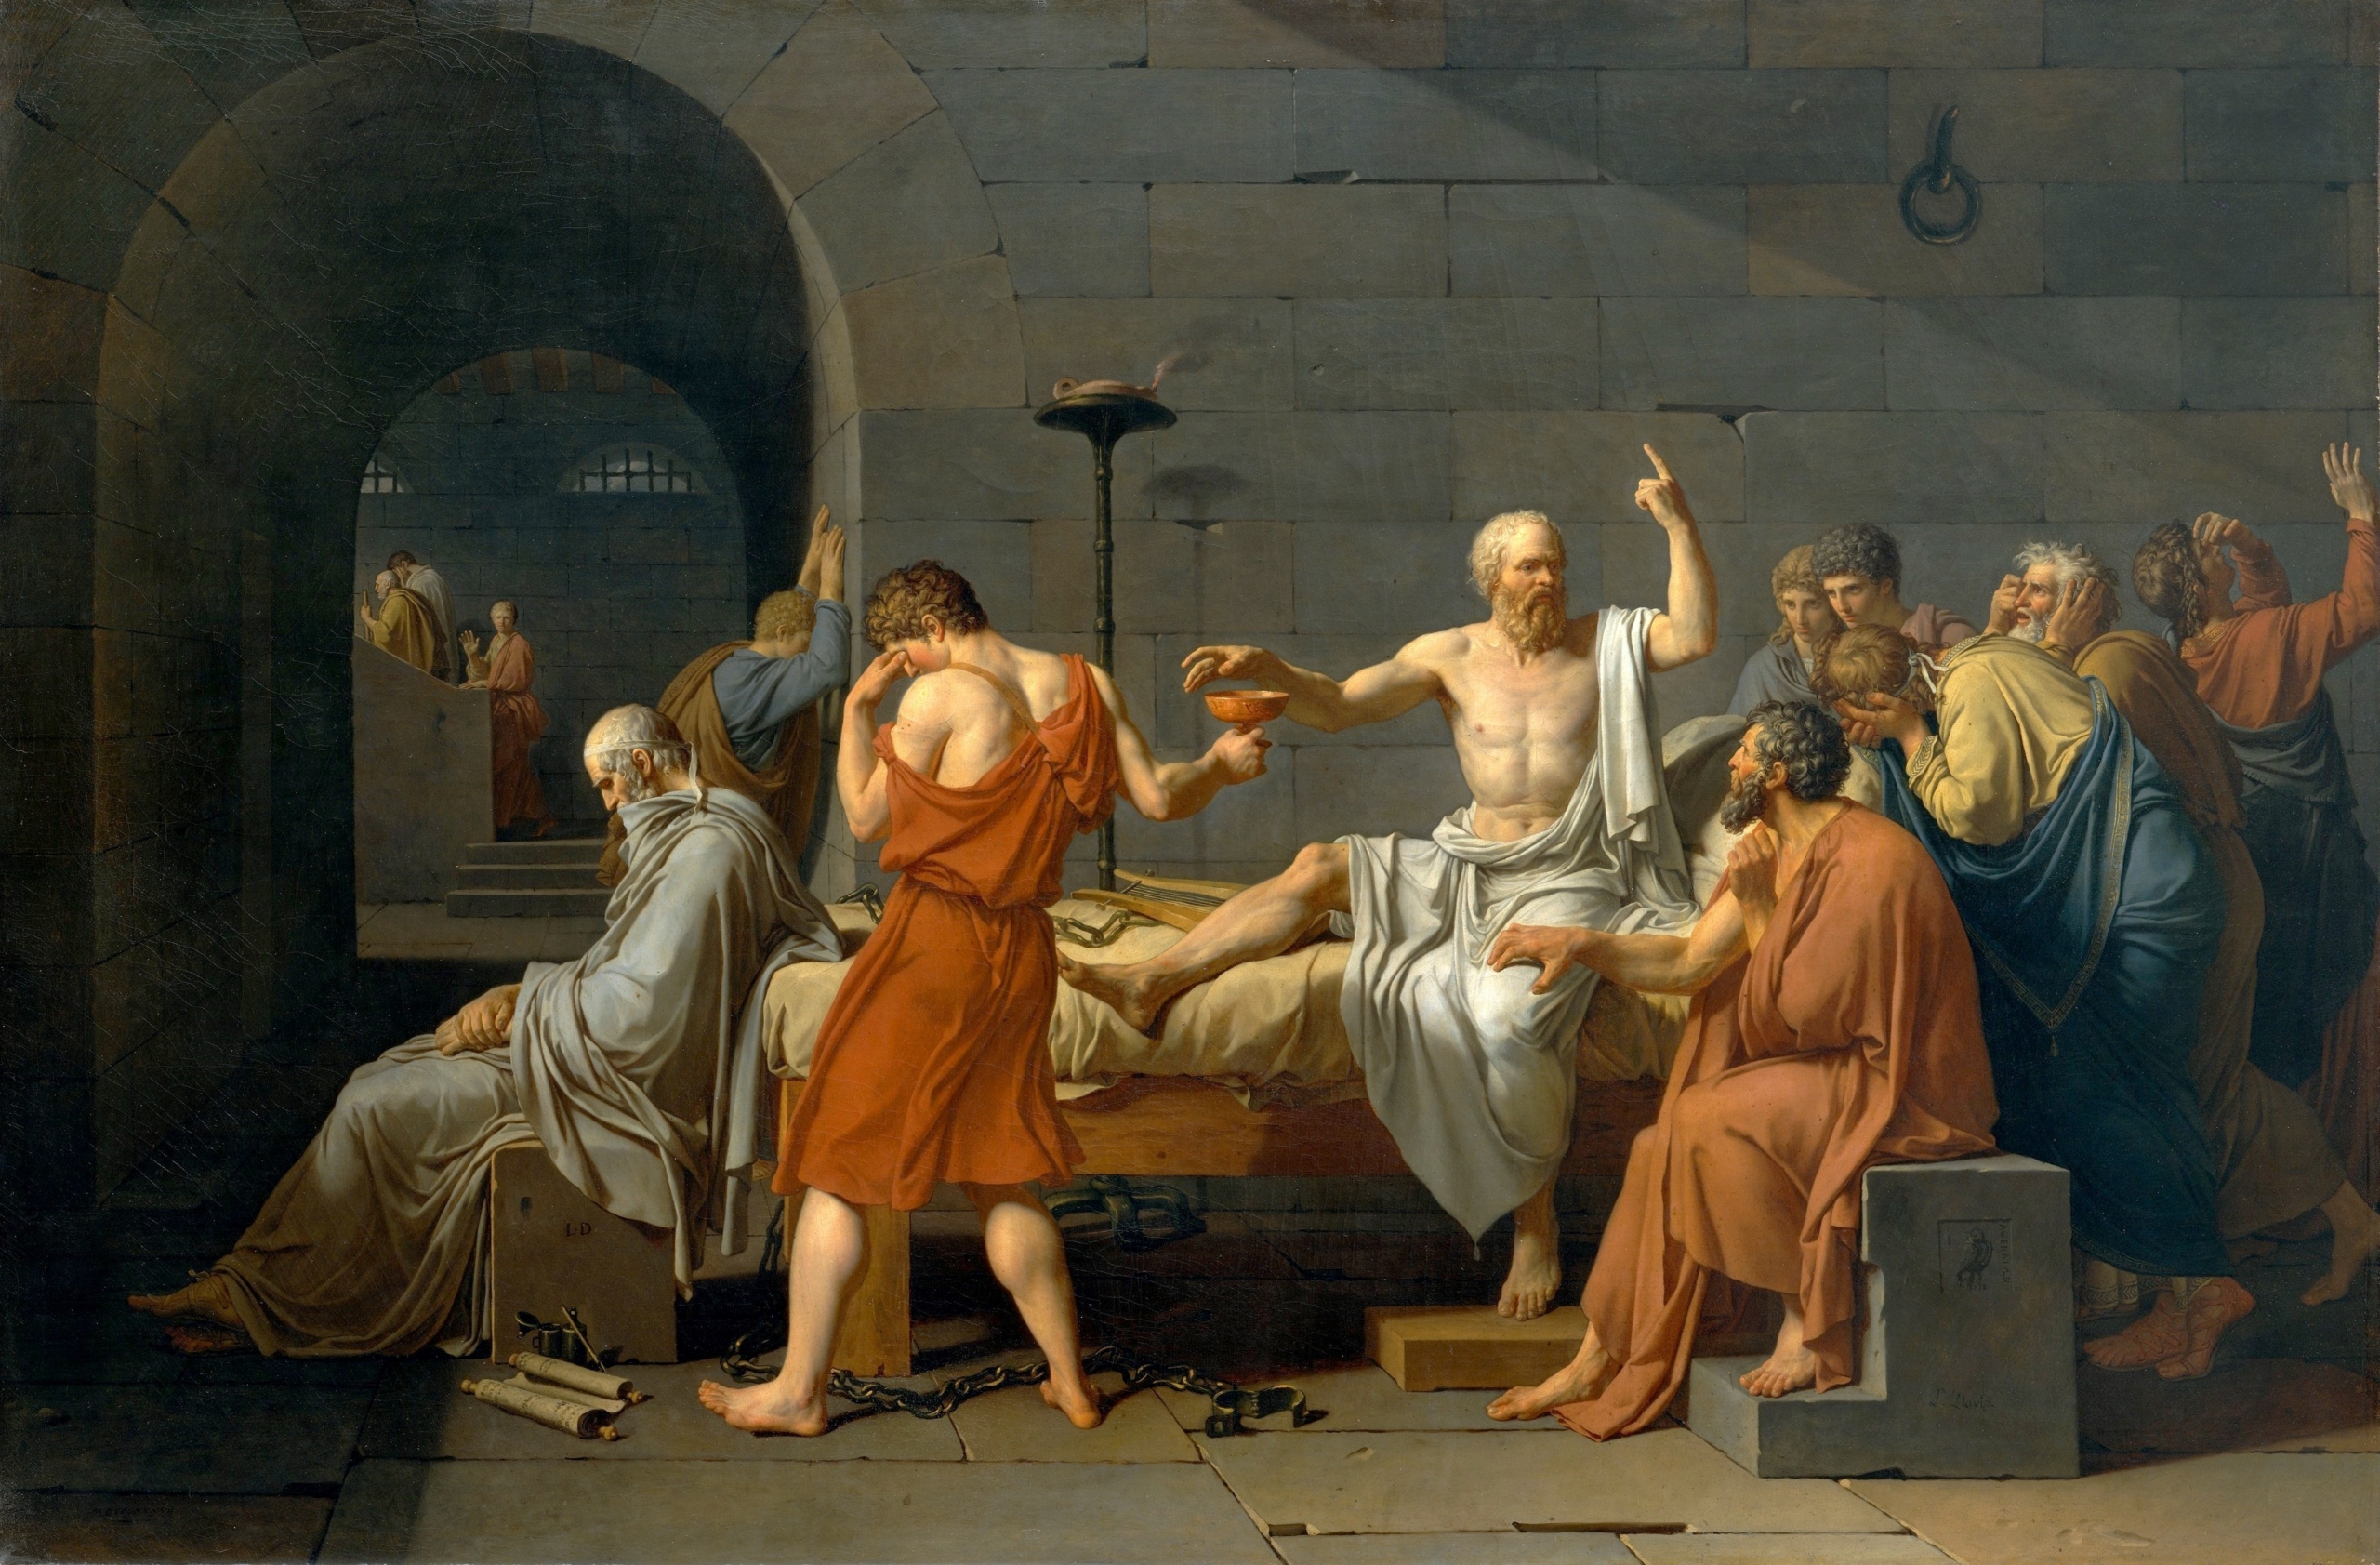 Trong bức tranh sơn dầu cổ điển “Cái chết của Socrates,” Socrates đã đối mặt với cái chết một cách bình thản. Bức tranh hiện đang được lưu giữ tại Bảo tàng Nghệ thuật Metropolitan, New York. (Ảnh: Tài sản công)